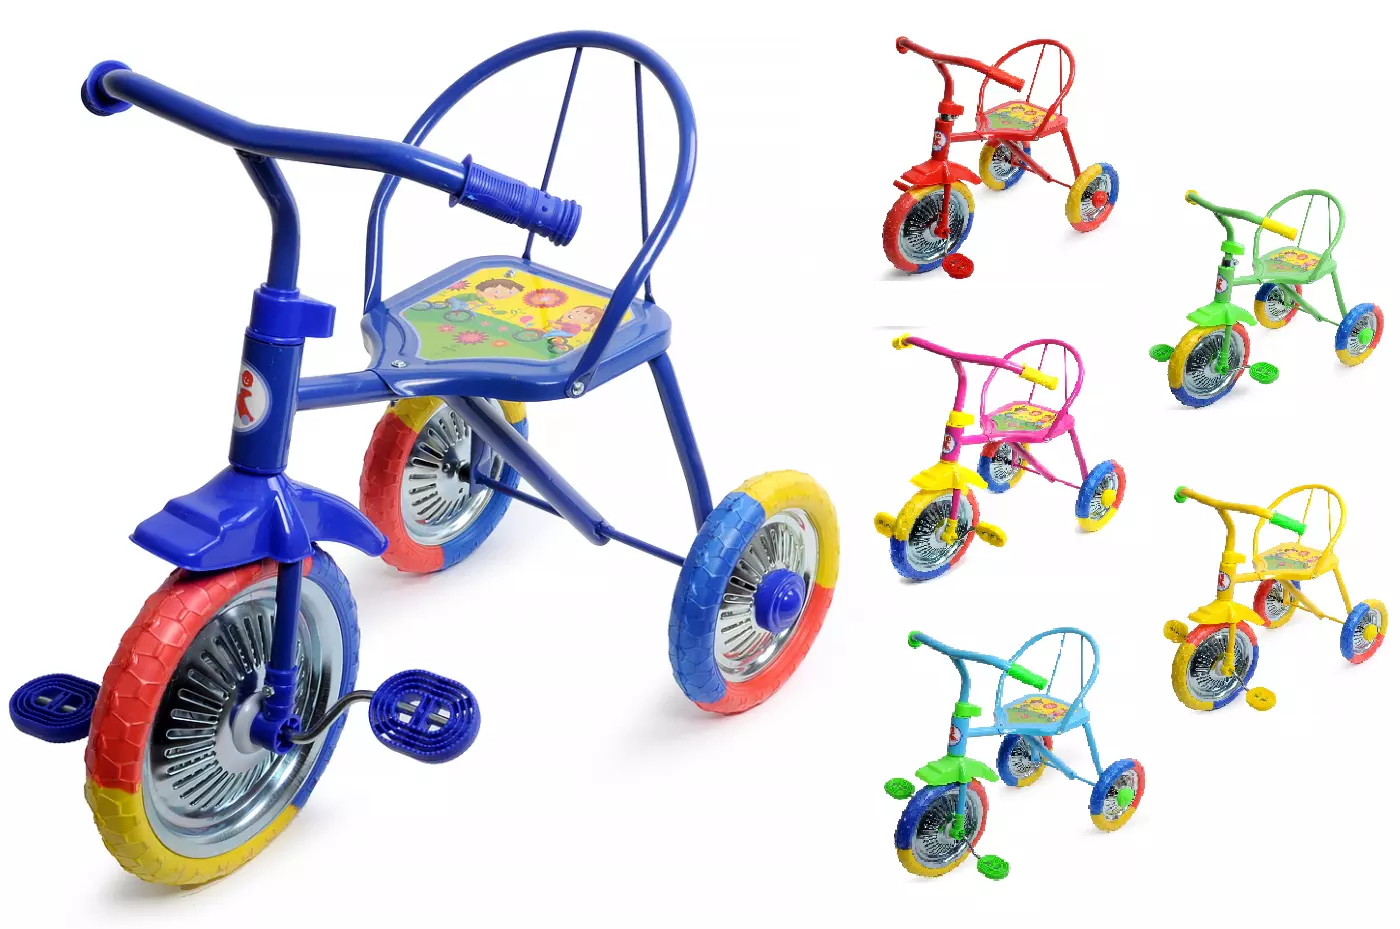 Детский велосипед три колеса. Велосипед трехколесный lh702. Велосипед 3-х озорной ветерок GV-b3-2mx цвета микс. Трехколесный велосипед PN-1010, Panterra, "гвоздик". Велосипед трёхколёсный детский lh702.